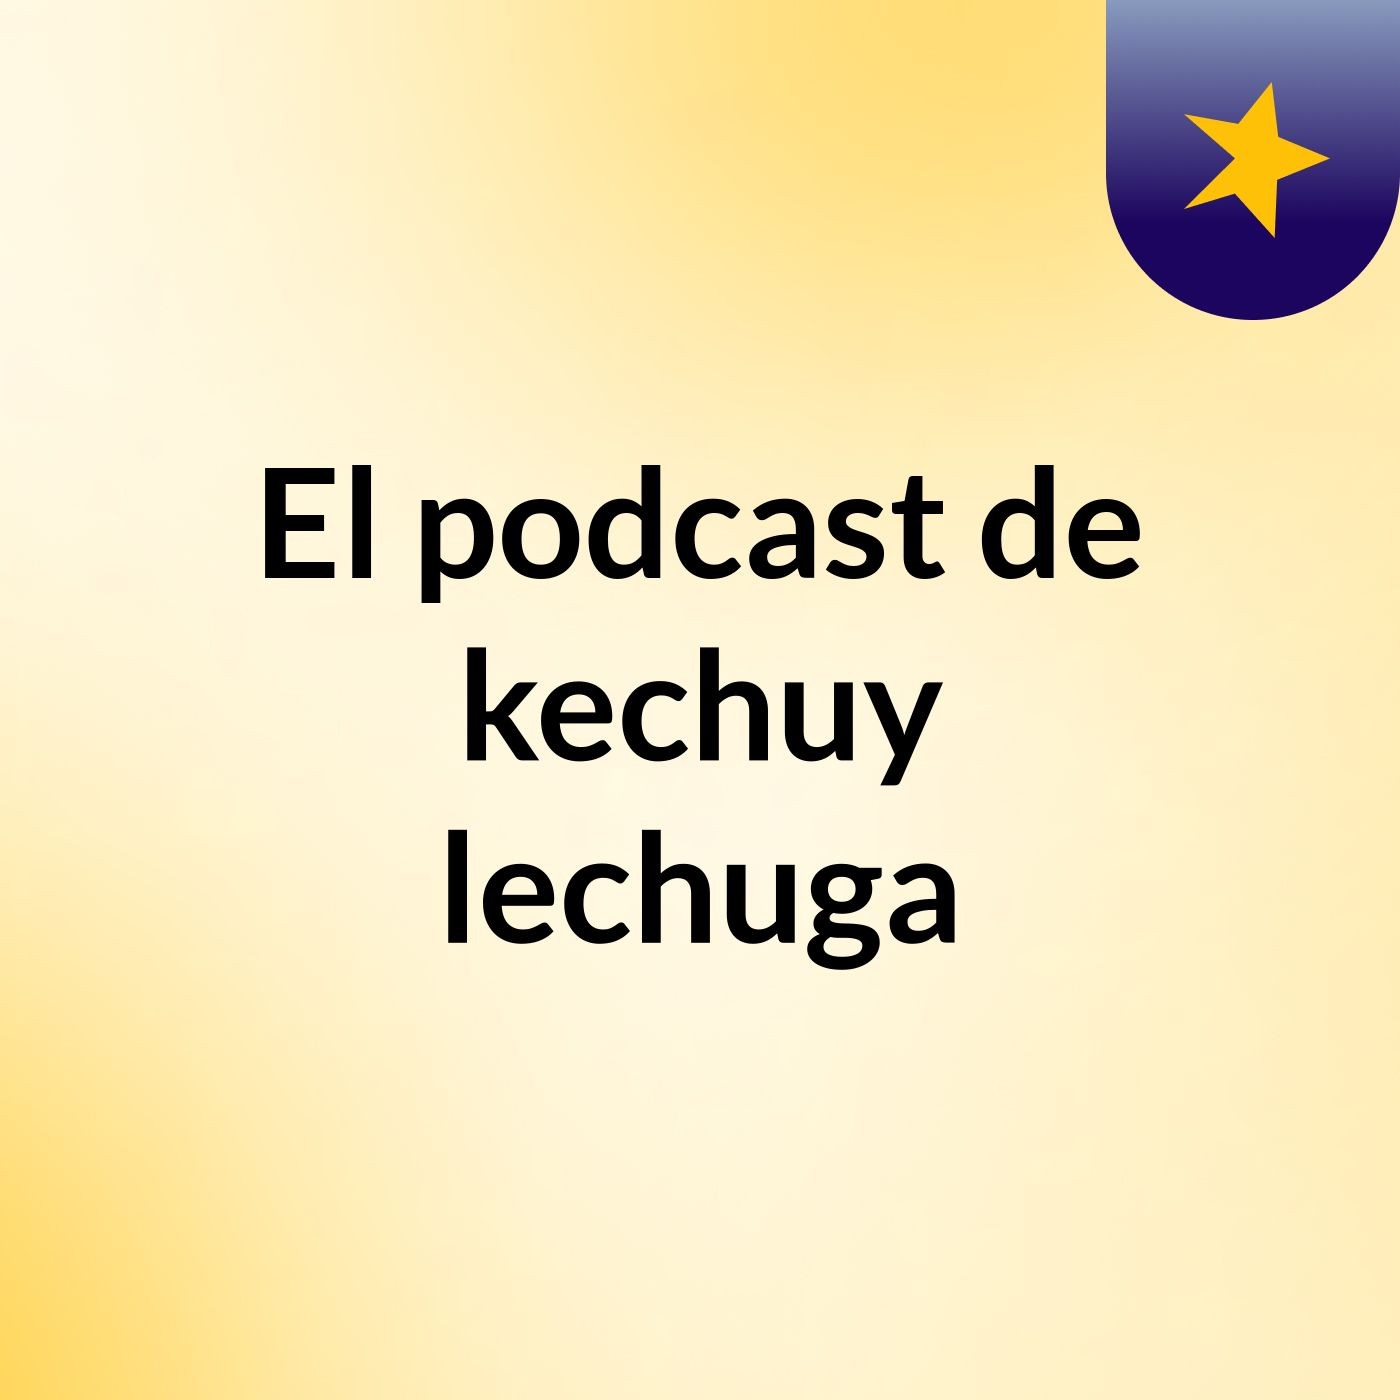 El podcast de kechuy lechuga